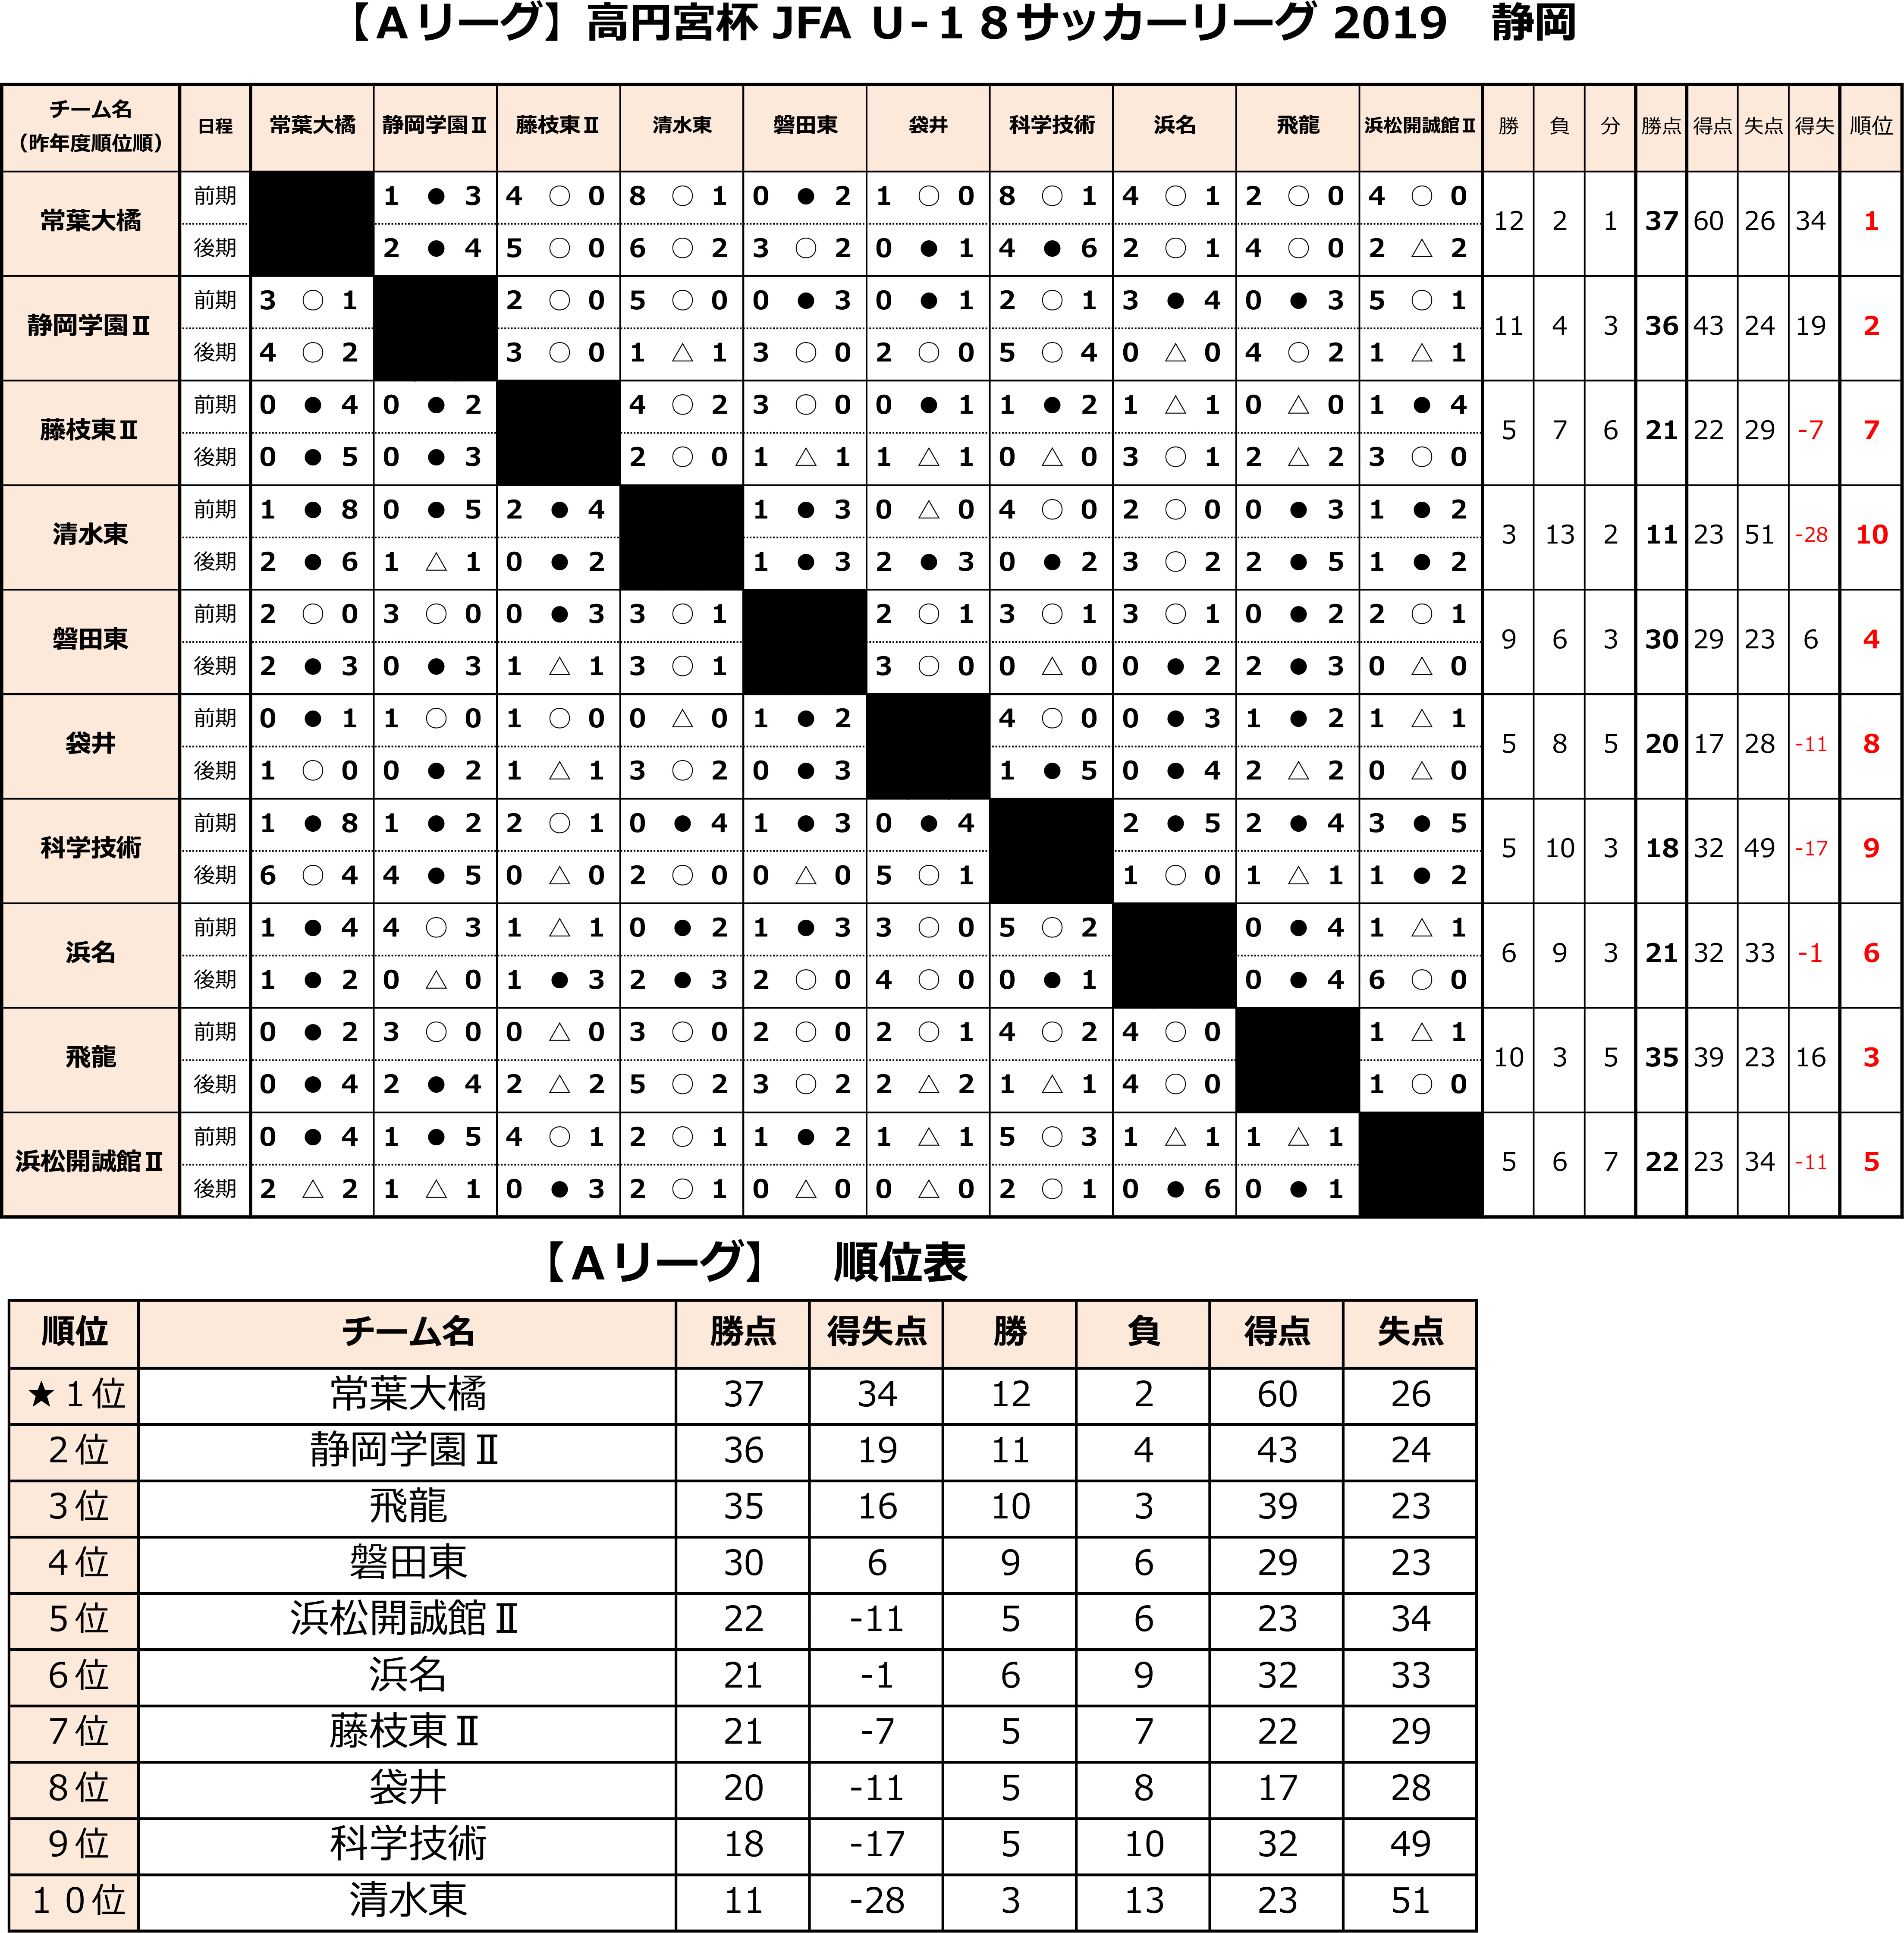 高円宮杯 JFA U-18サッカーリーグ2019 静岡　Aリーグ後期 トーナメント表